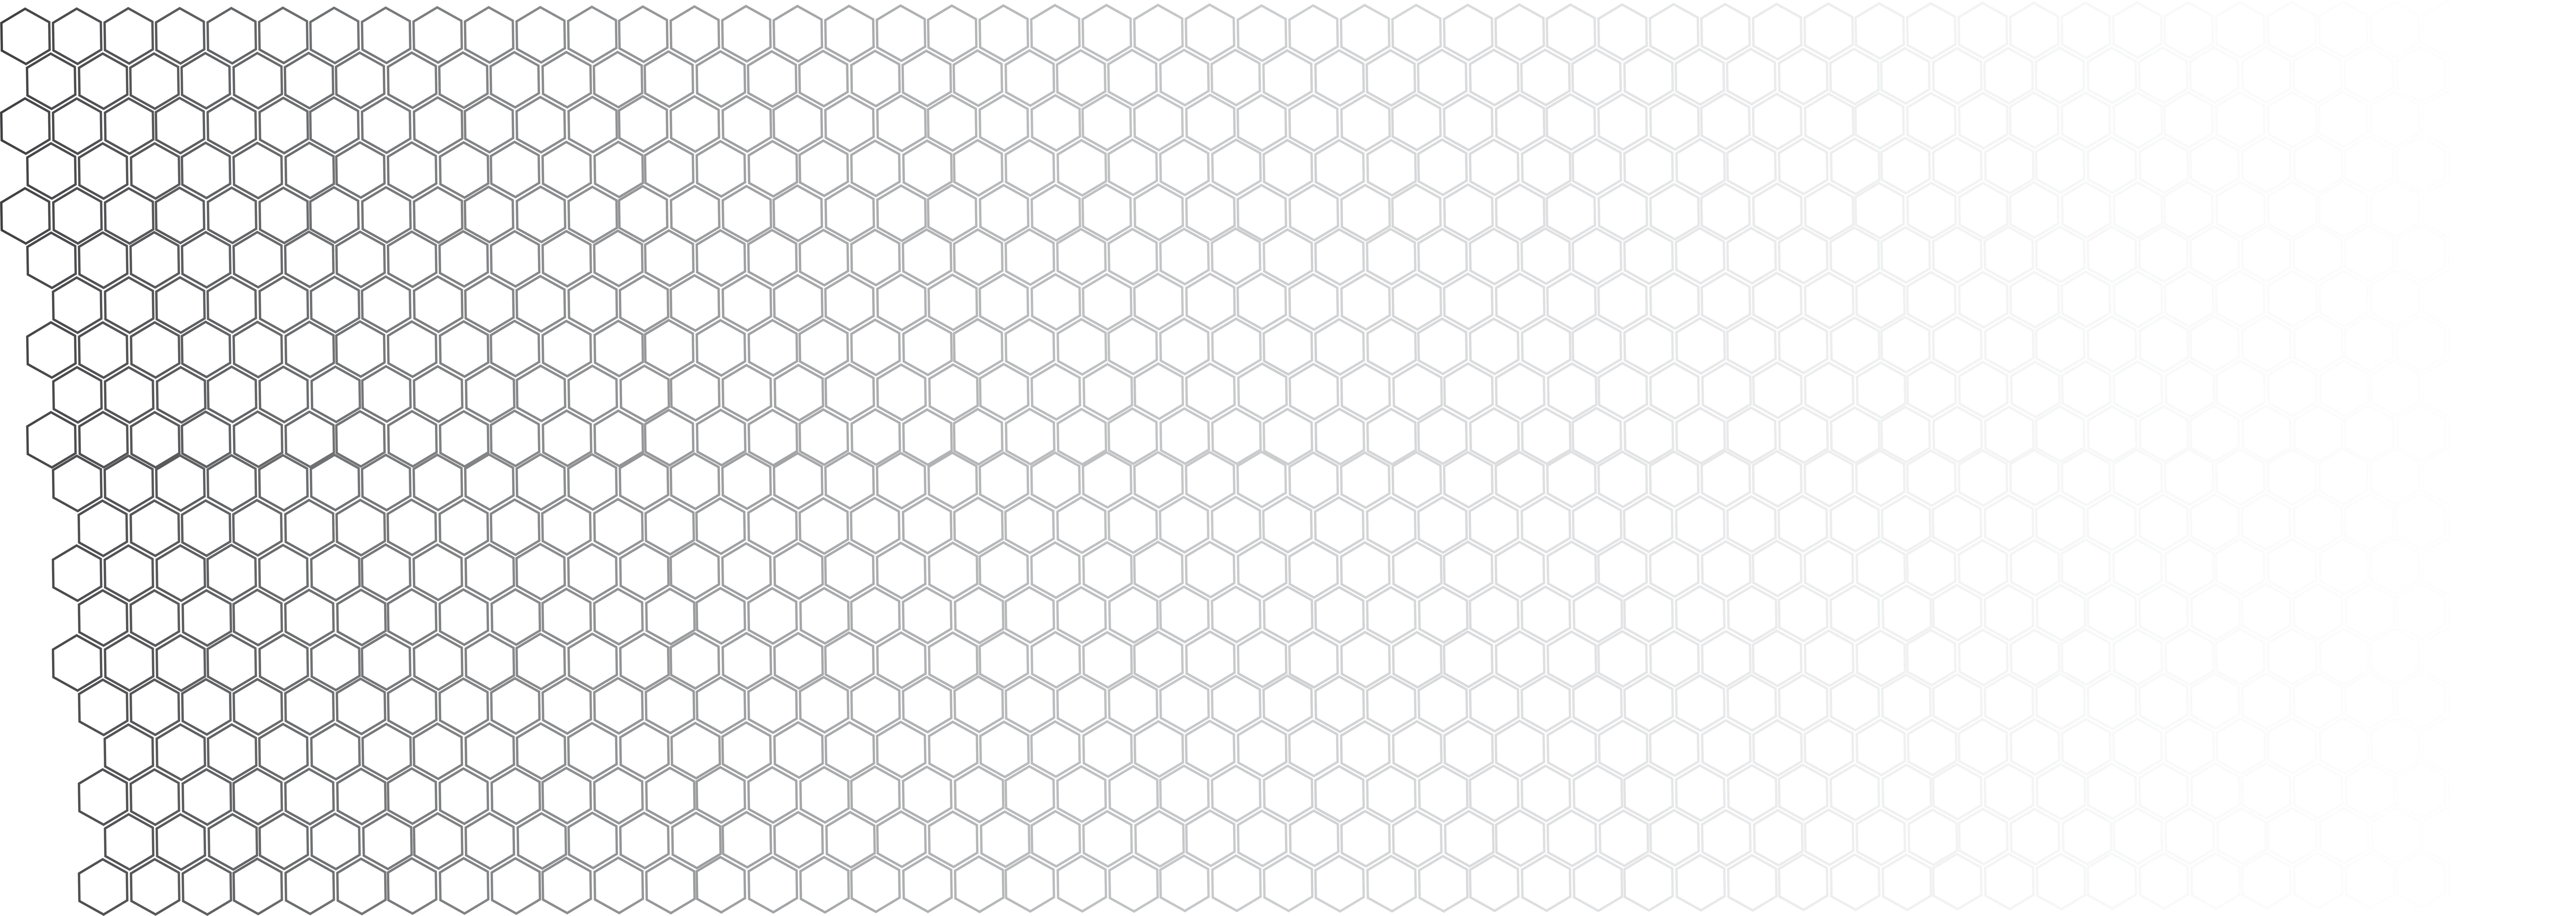 Honeycomb Background Image